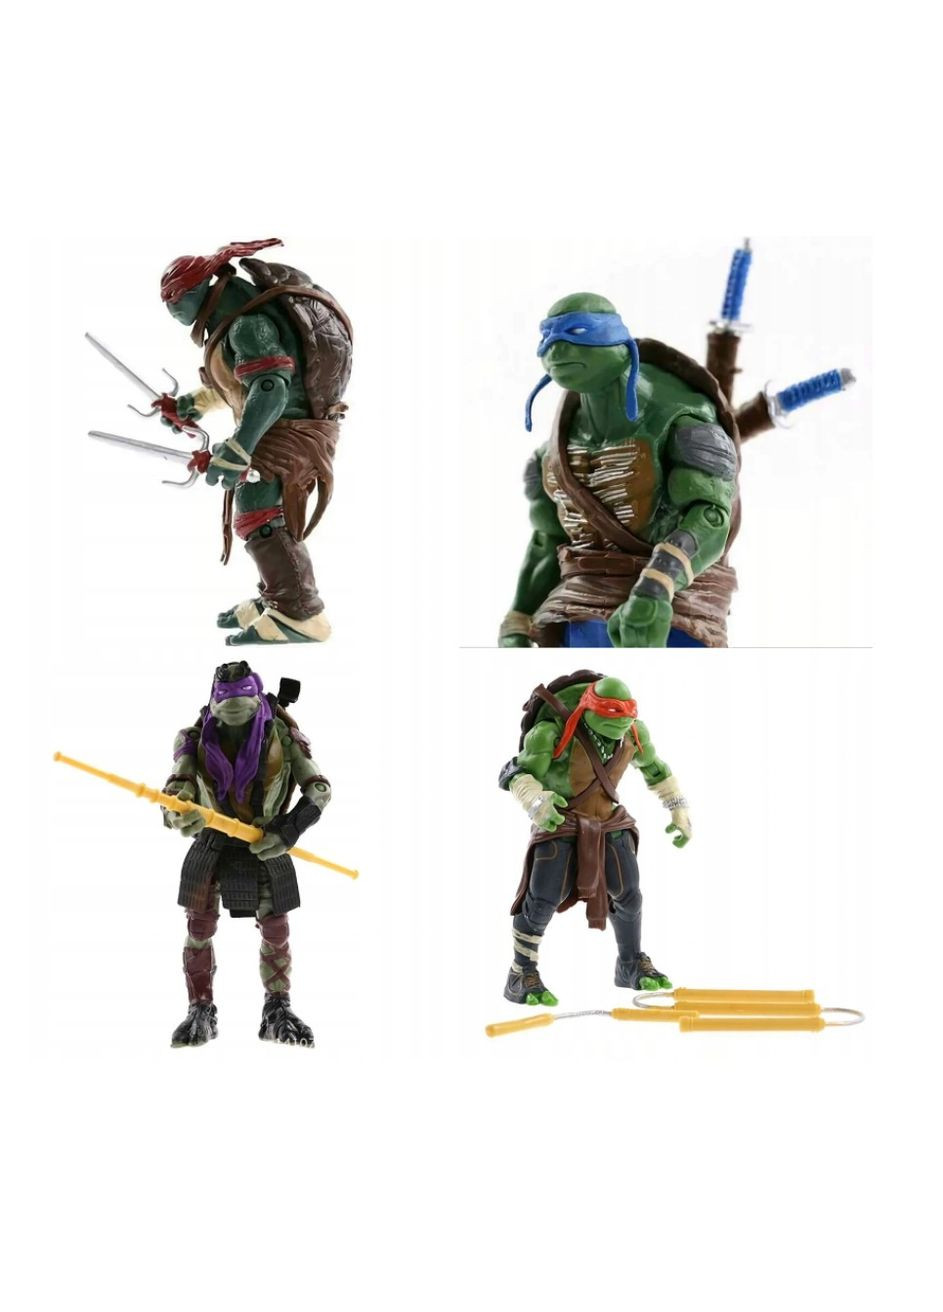 Черепашки Ниндзя Ninja Turtles Леонардо, Донателло, Микеланджело, Рафаэль набор фигурок 4 шт игровые фигурки с оружием 13 см Shantou (280258408)